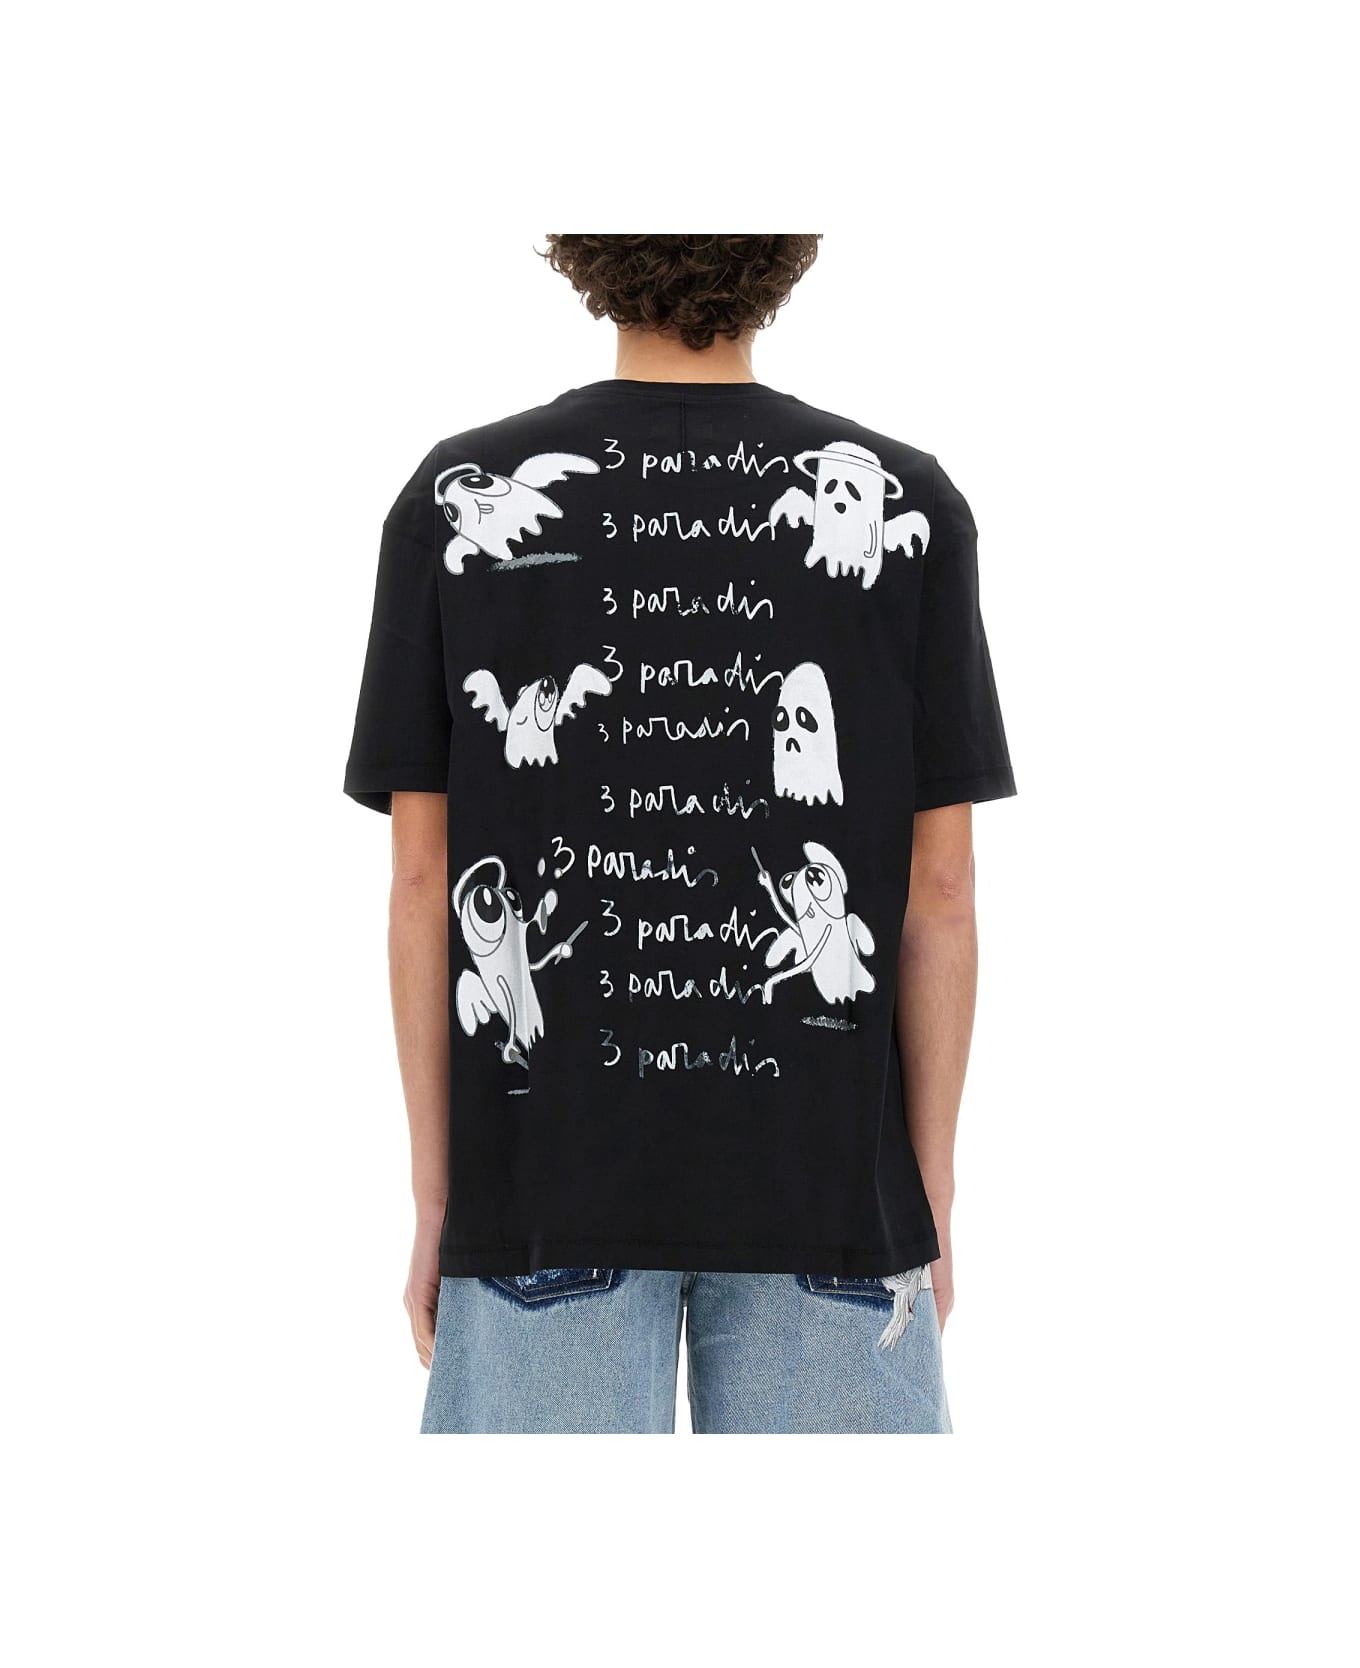 3.Paradis X Edgar Plans T-shirt - BLACK シャツ